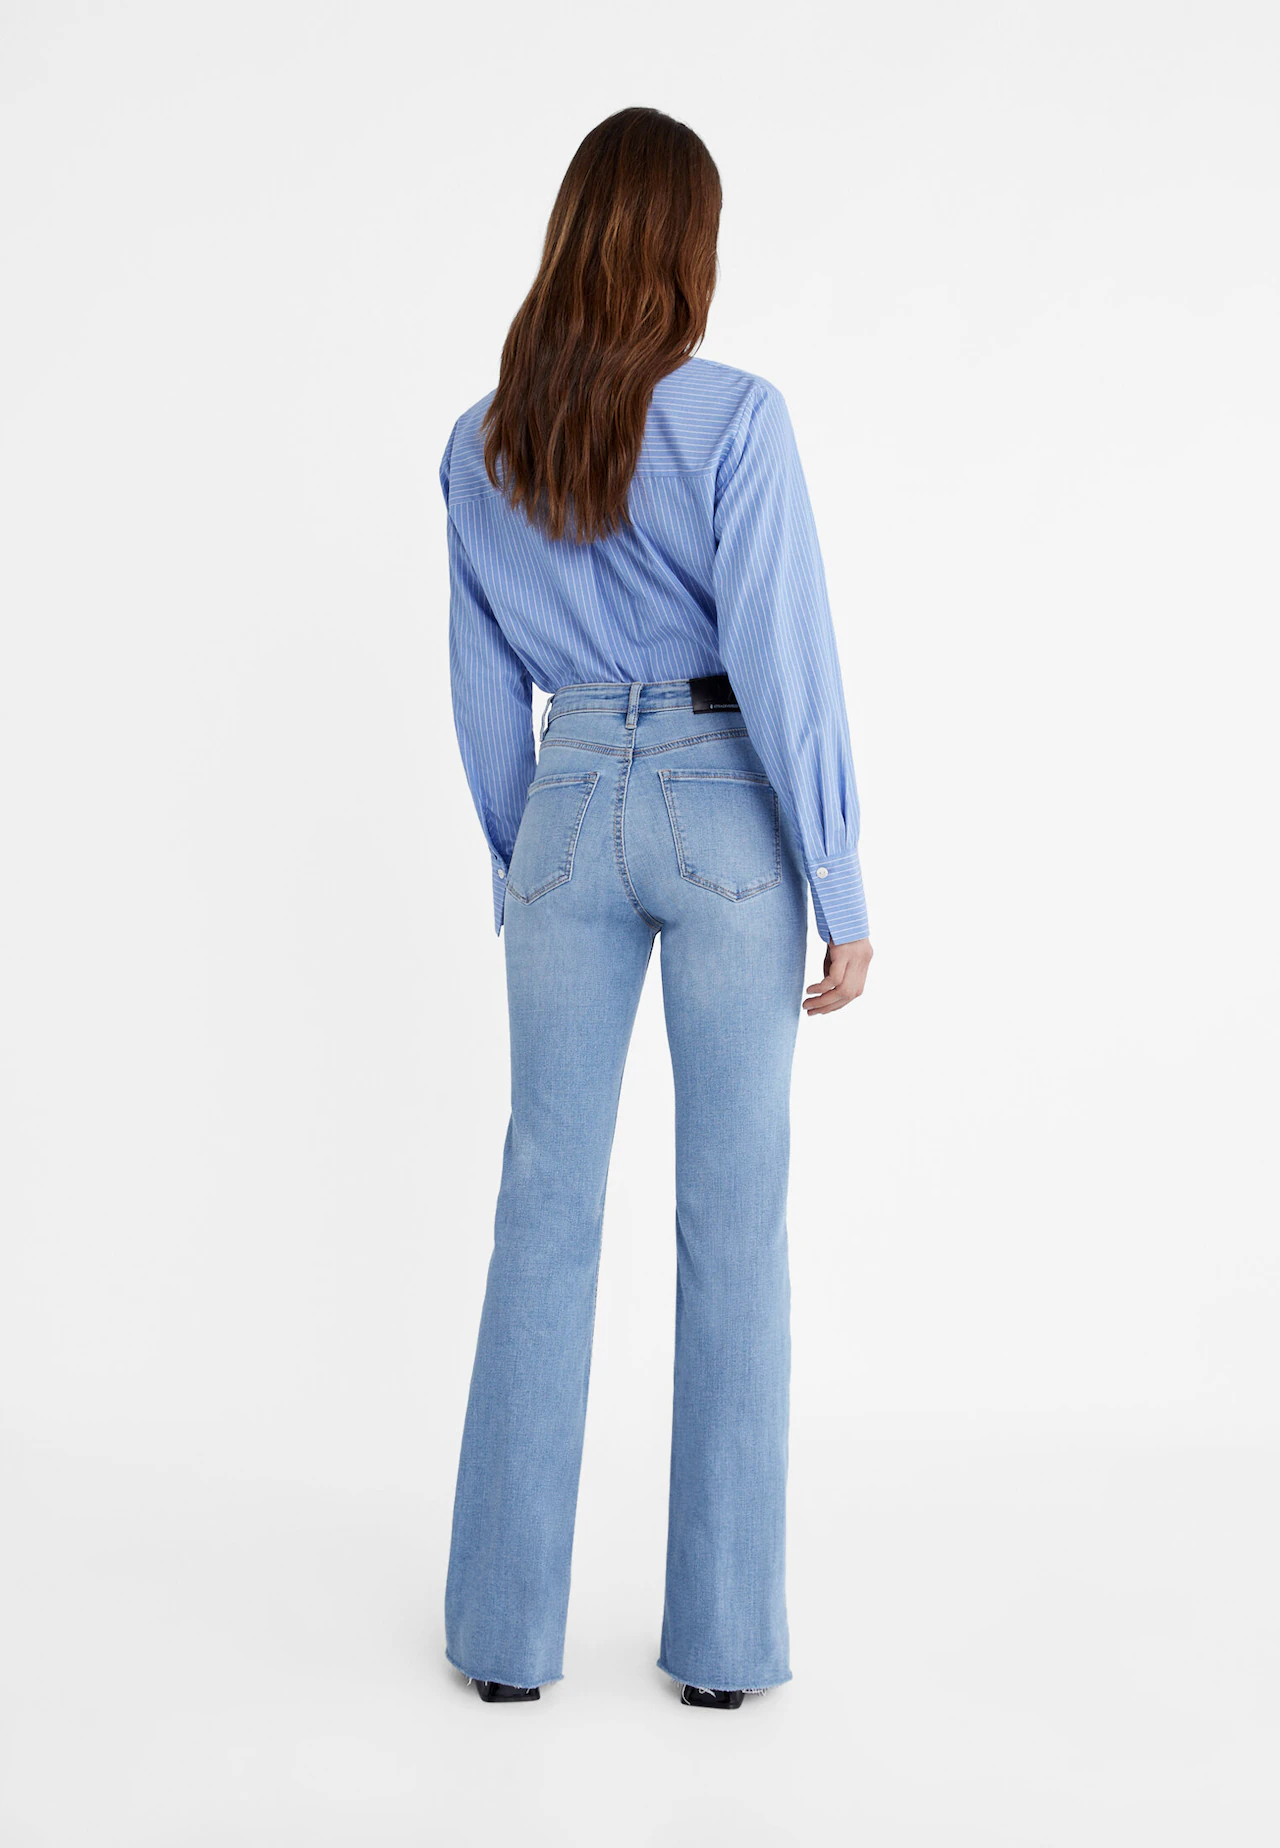 Jeans-Schlaghose im Slim-Fit - Mode für Damen